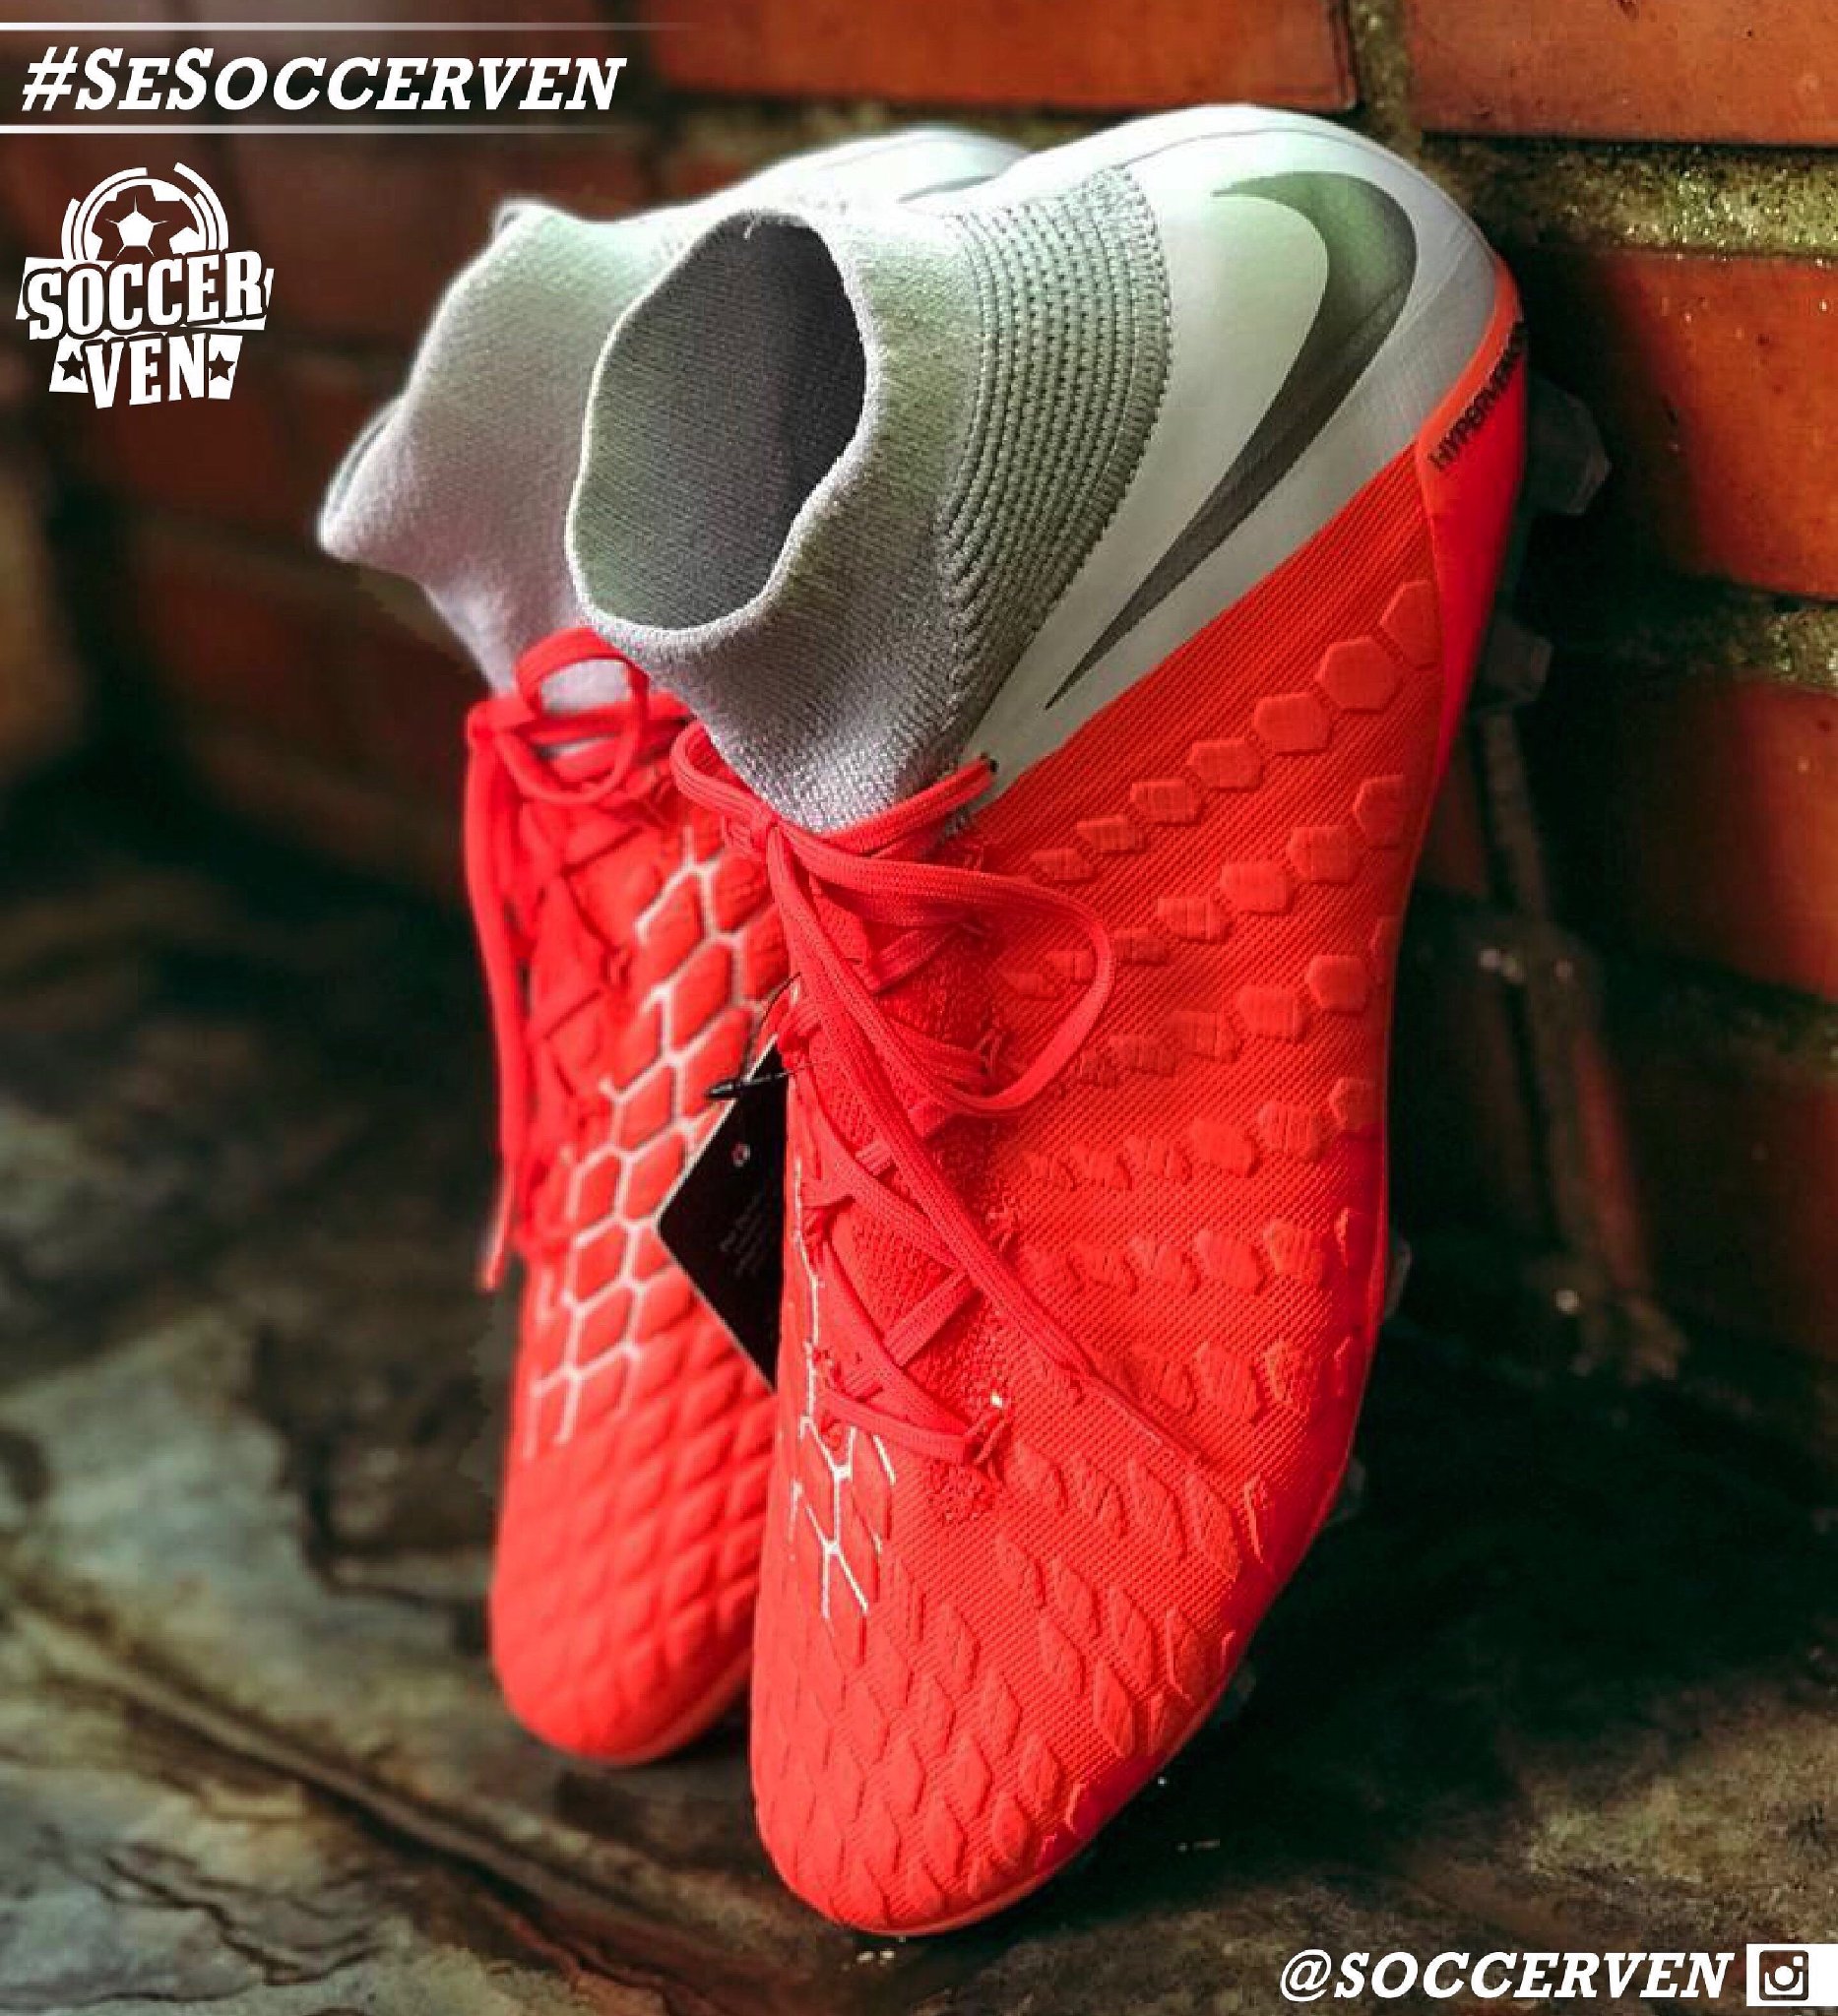 Sociable Hacer blusa SOLOVENEX - OFICIAL Twitter पर: "#PUBLICIDAD Nike Hypervenom: calzado  diseñado para futbolistas de alto rendimiento, poseen una carcasa de  Flyknit con paneles de foam reactivos que fortalecen el golpeo de balón.  ¡Una